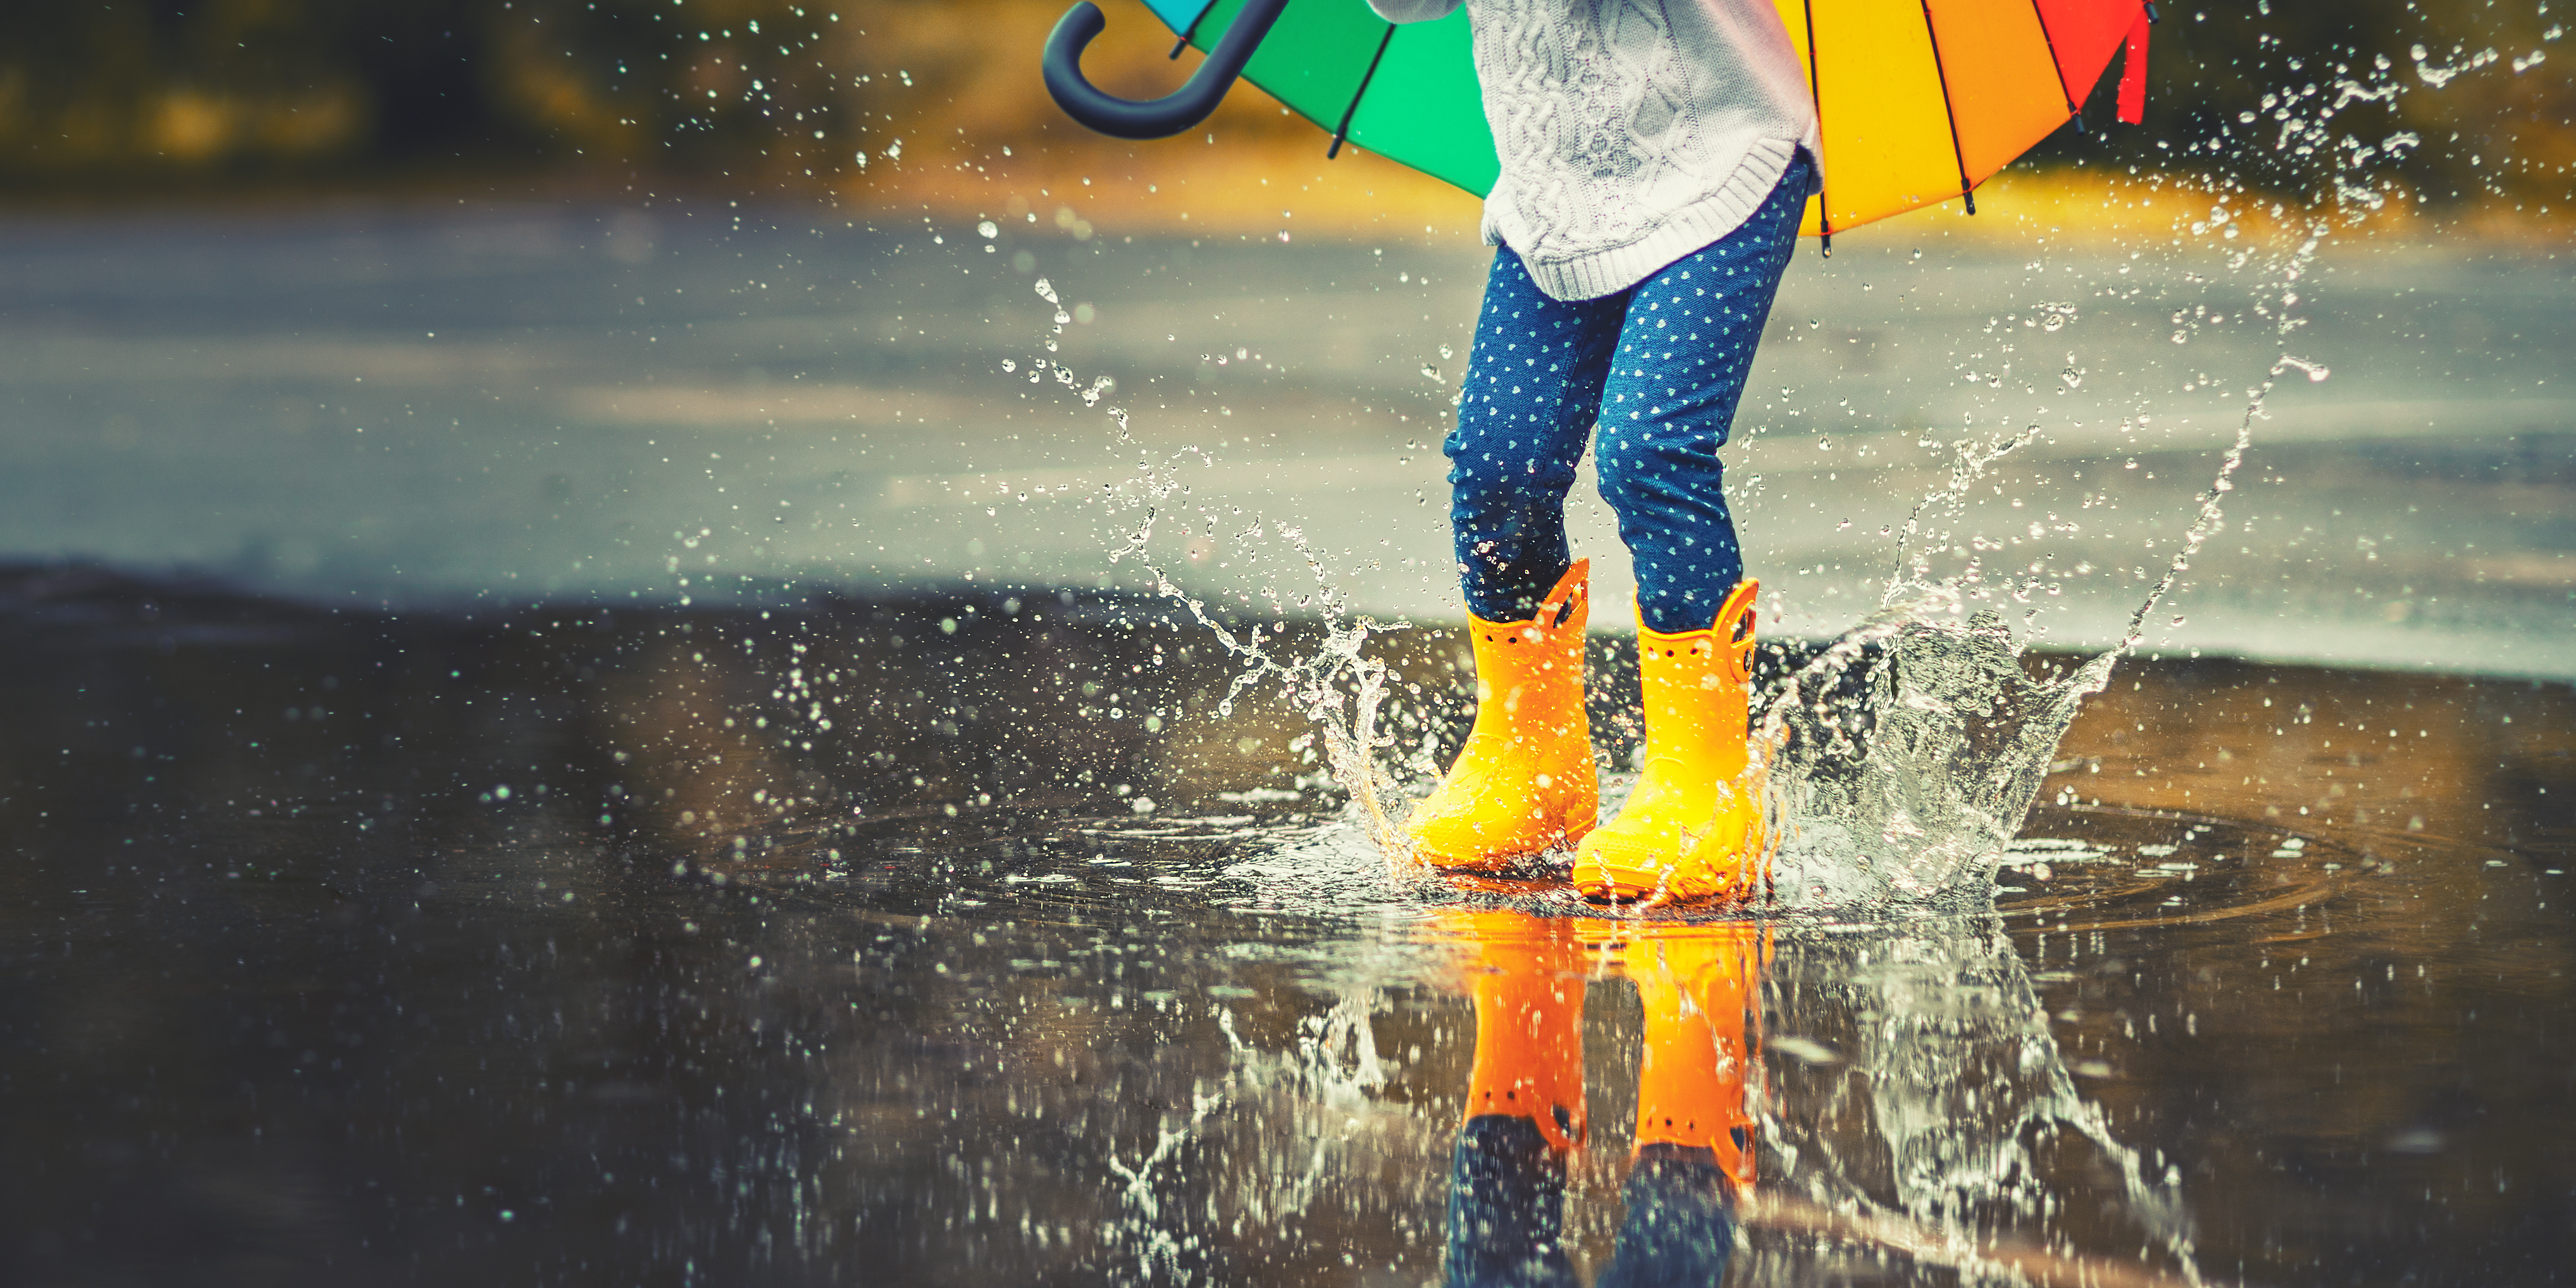 Ett barn med ett färgglatt paraply i handen och gula gummistövlar hoppar i en vattenpöl.